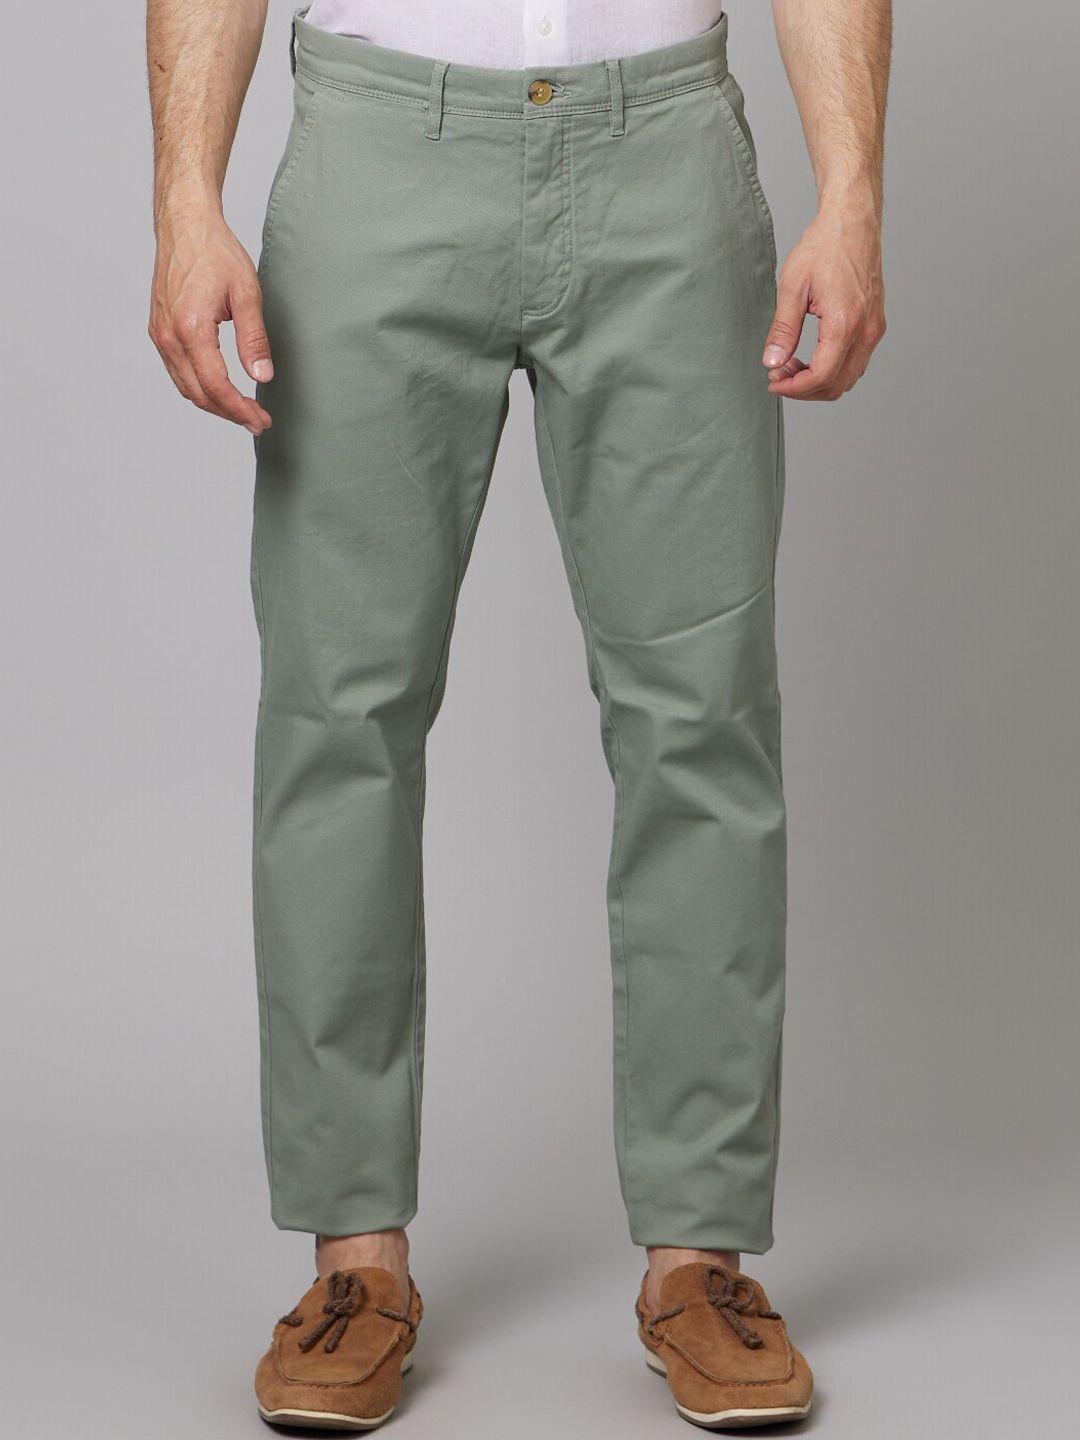 celio-men-mid-rise-plain-cotton-slim-fit-chinos-trousers